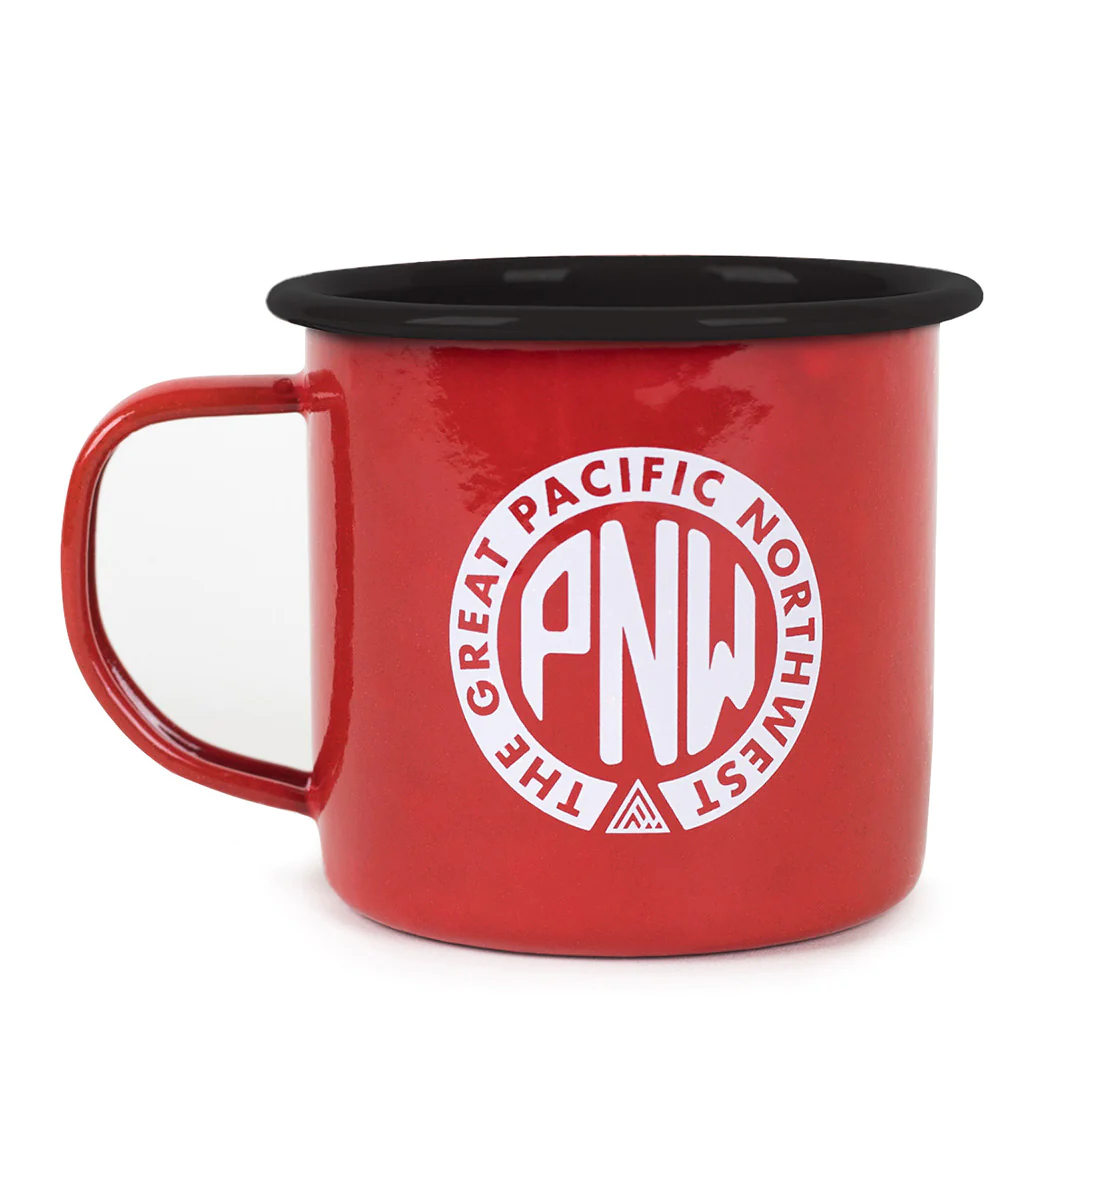 The Great PNW Union Enamel Mug stock